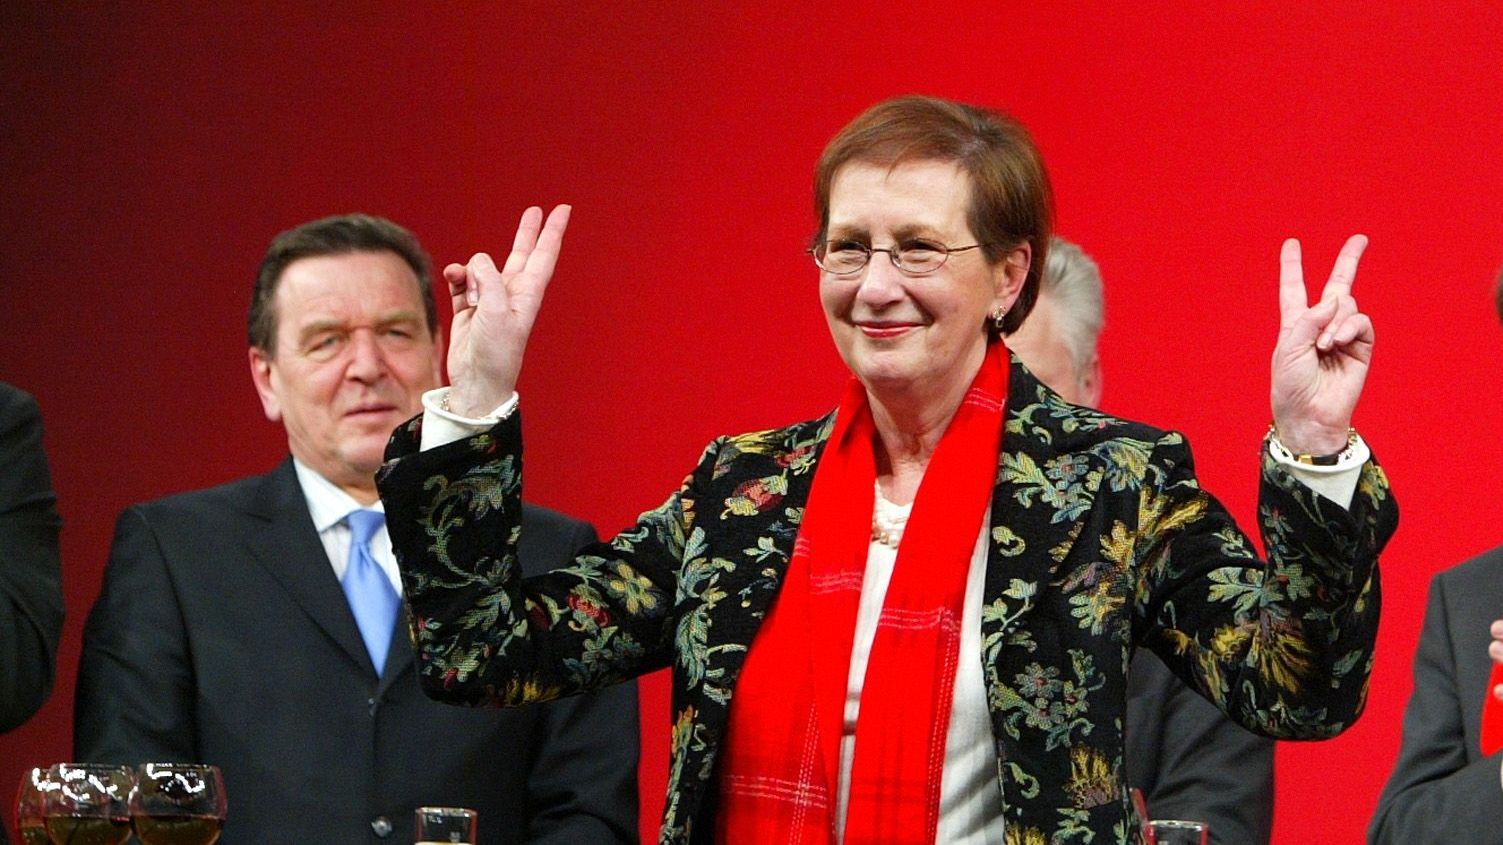 Heide Simonis (4. Juli 1943 - 12. Juli 2023), SPD-Politikerin und frühere schleswig-holsteinische Ministerpräsidentin